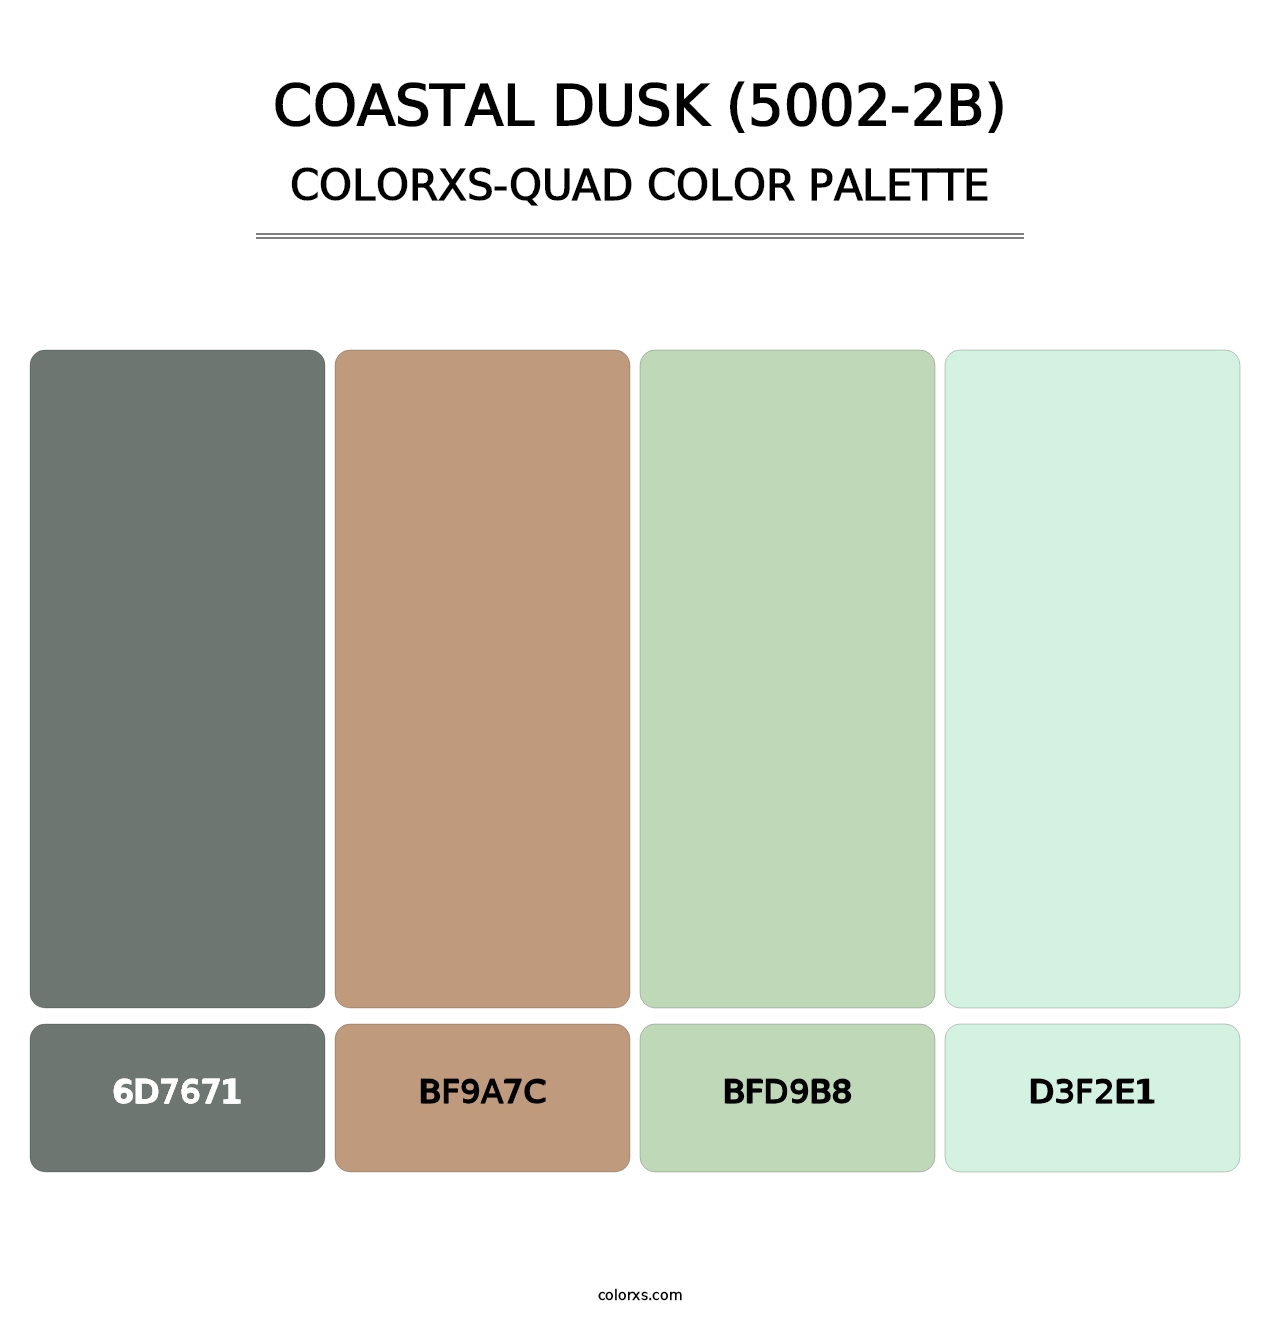 Coastal Dusk (5002-2B) - Colorxs Quad Palette